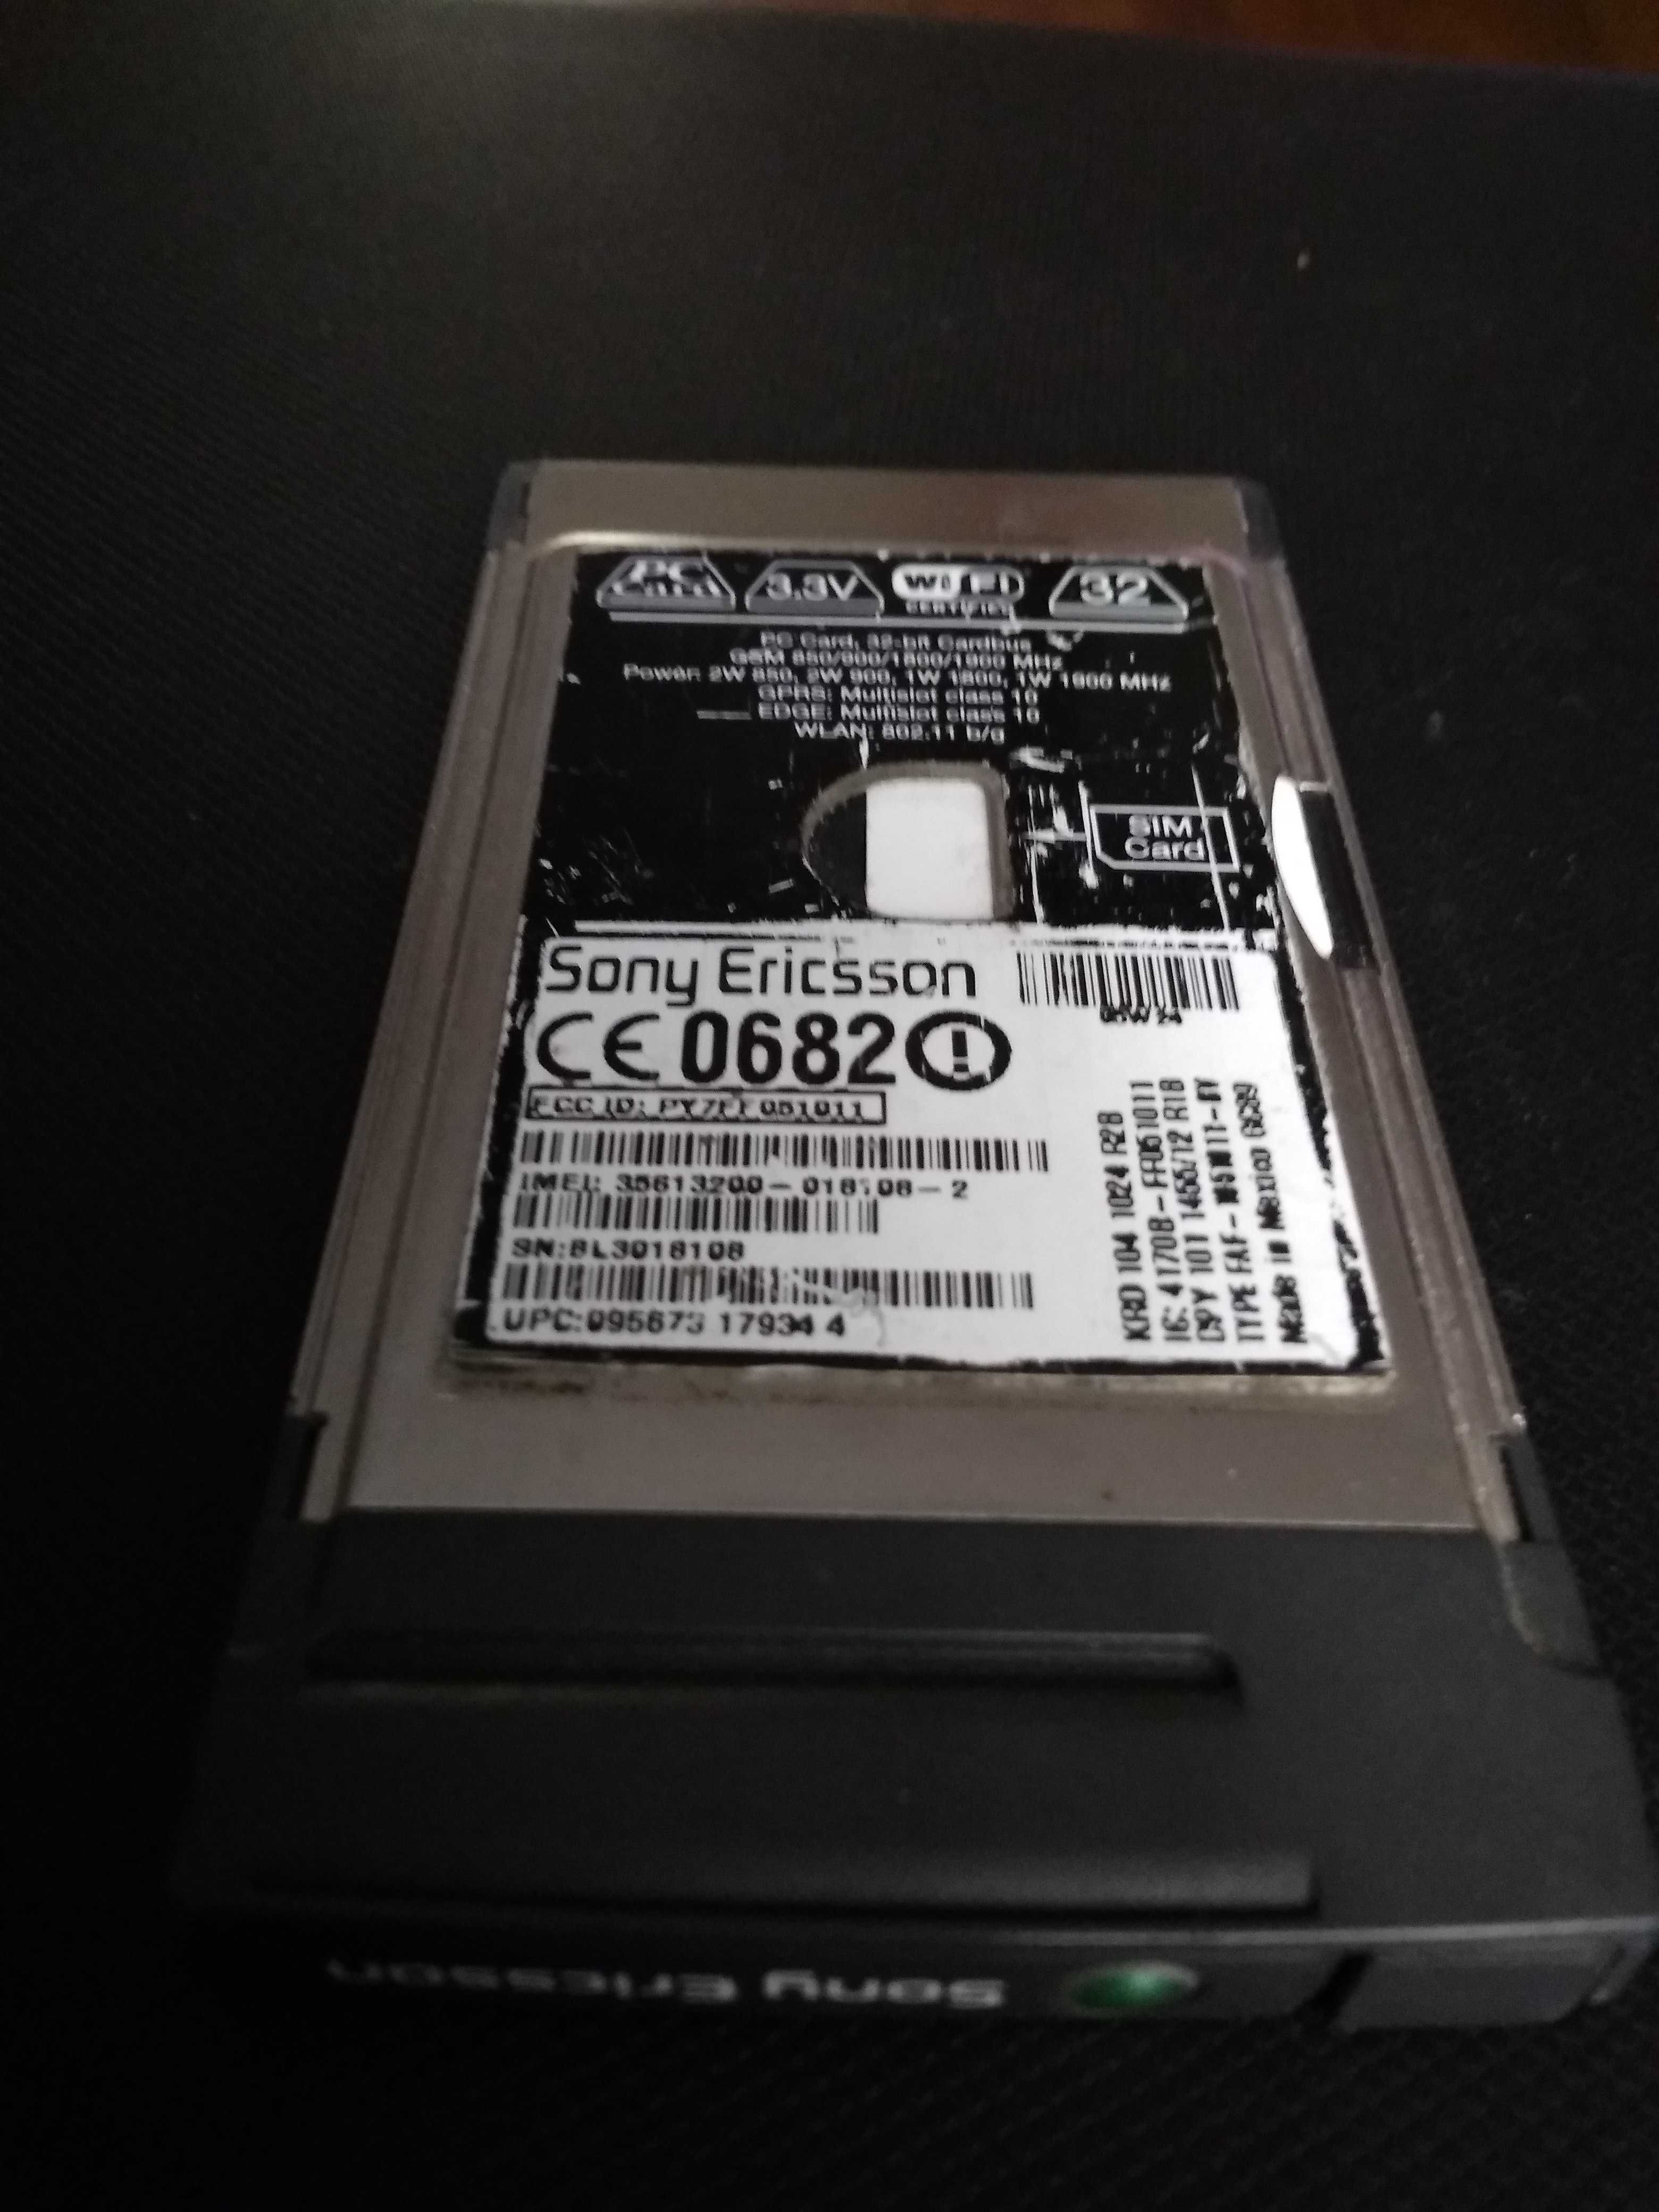 Modem internetowy Sony Ericsson PC GC89 EDGE/WLAN na kartę SIM